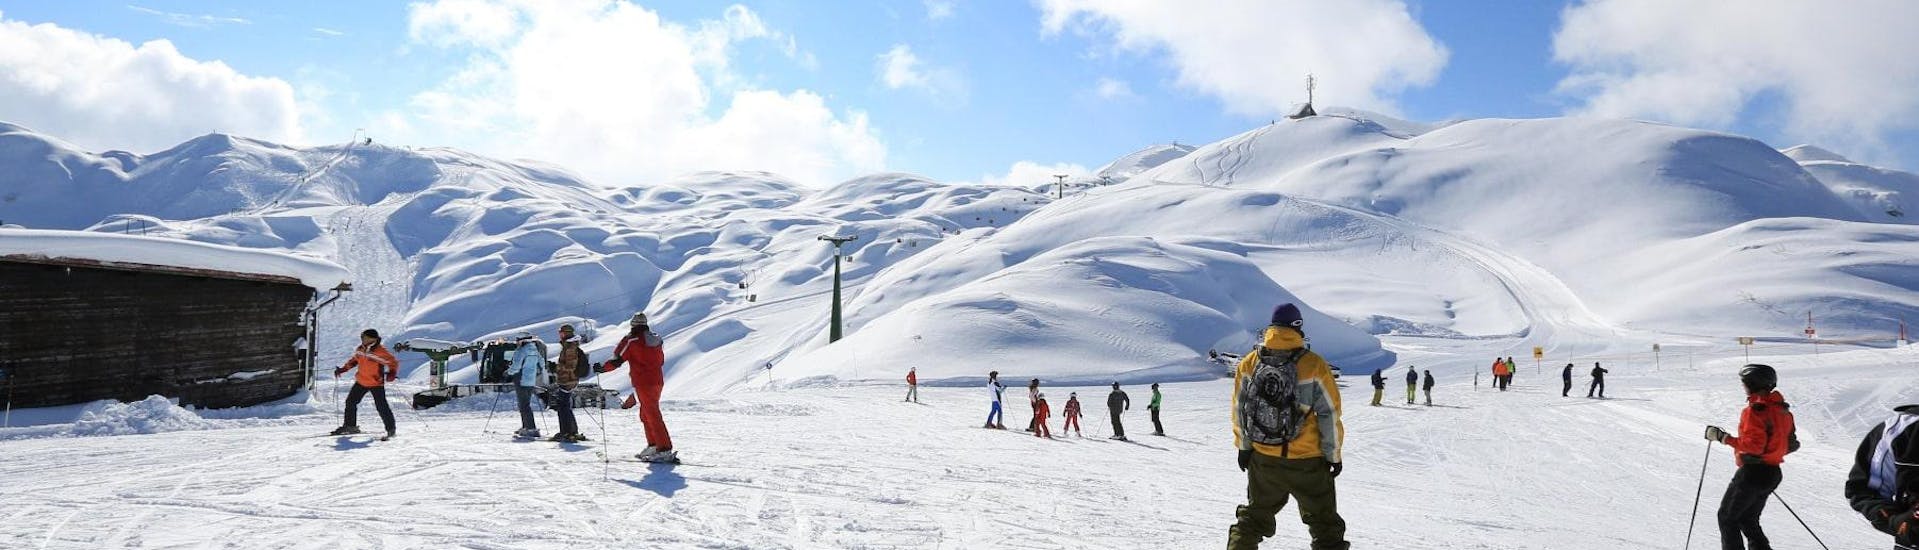 Während des Snowboard-Privatkurses für Kinder und Erwachsene probiert ein erwachsener Snowboarder die ersten Backside-Turns unter der Anleitung eines erfahrenen Lehrers von OUTdoor Slovenia Bled aus -Für alle Levels.